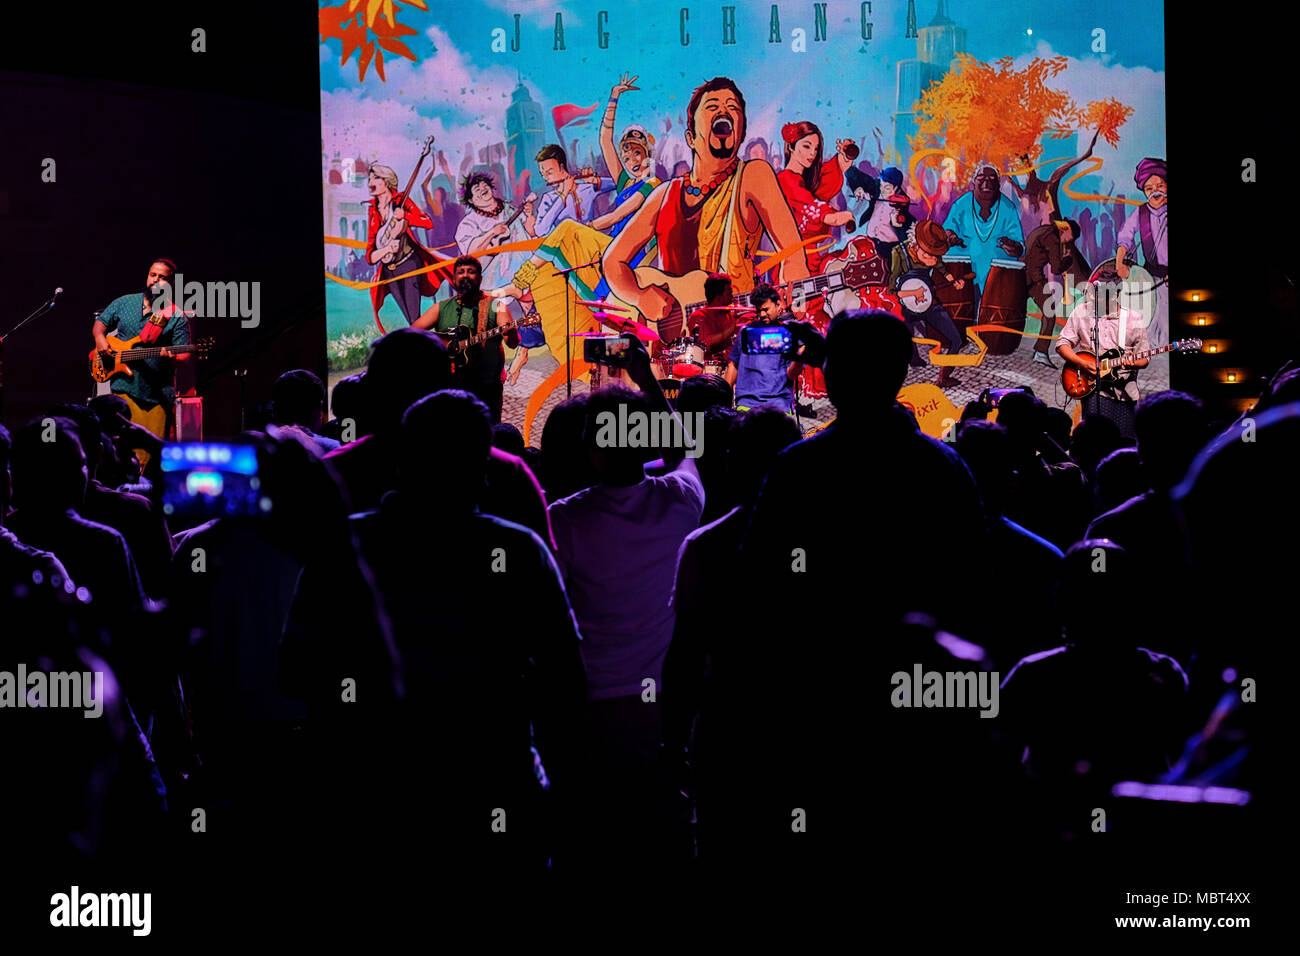 Silhouette di pubblico godendo di musica al concerto dal vivo (Jag Changa) da Raghu Dixit a Umm Al Emarat Park, Abu Dhabi, negli Emirati Arabi Uniti. Foto Stock